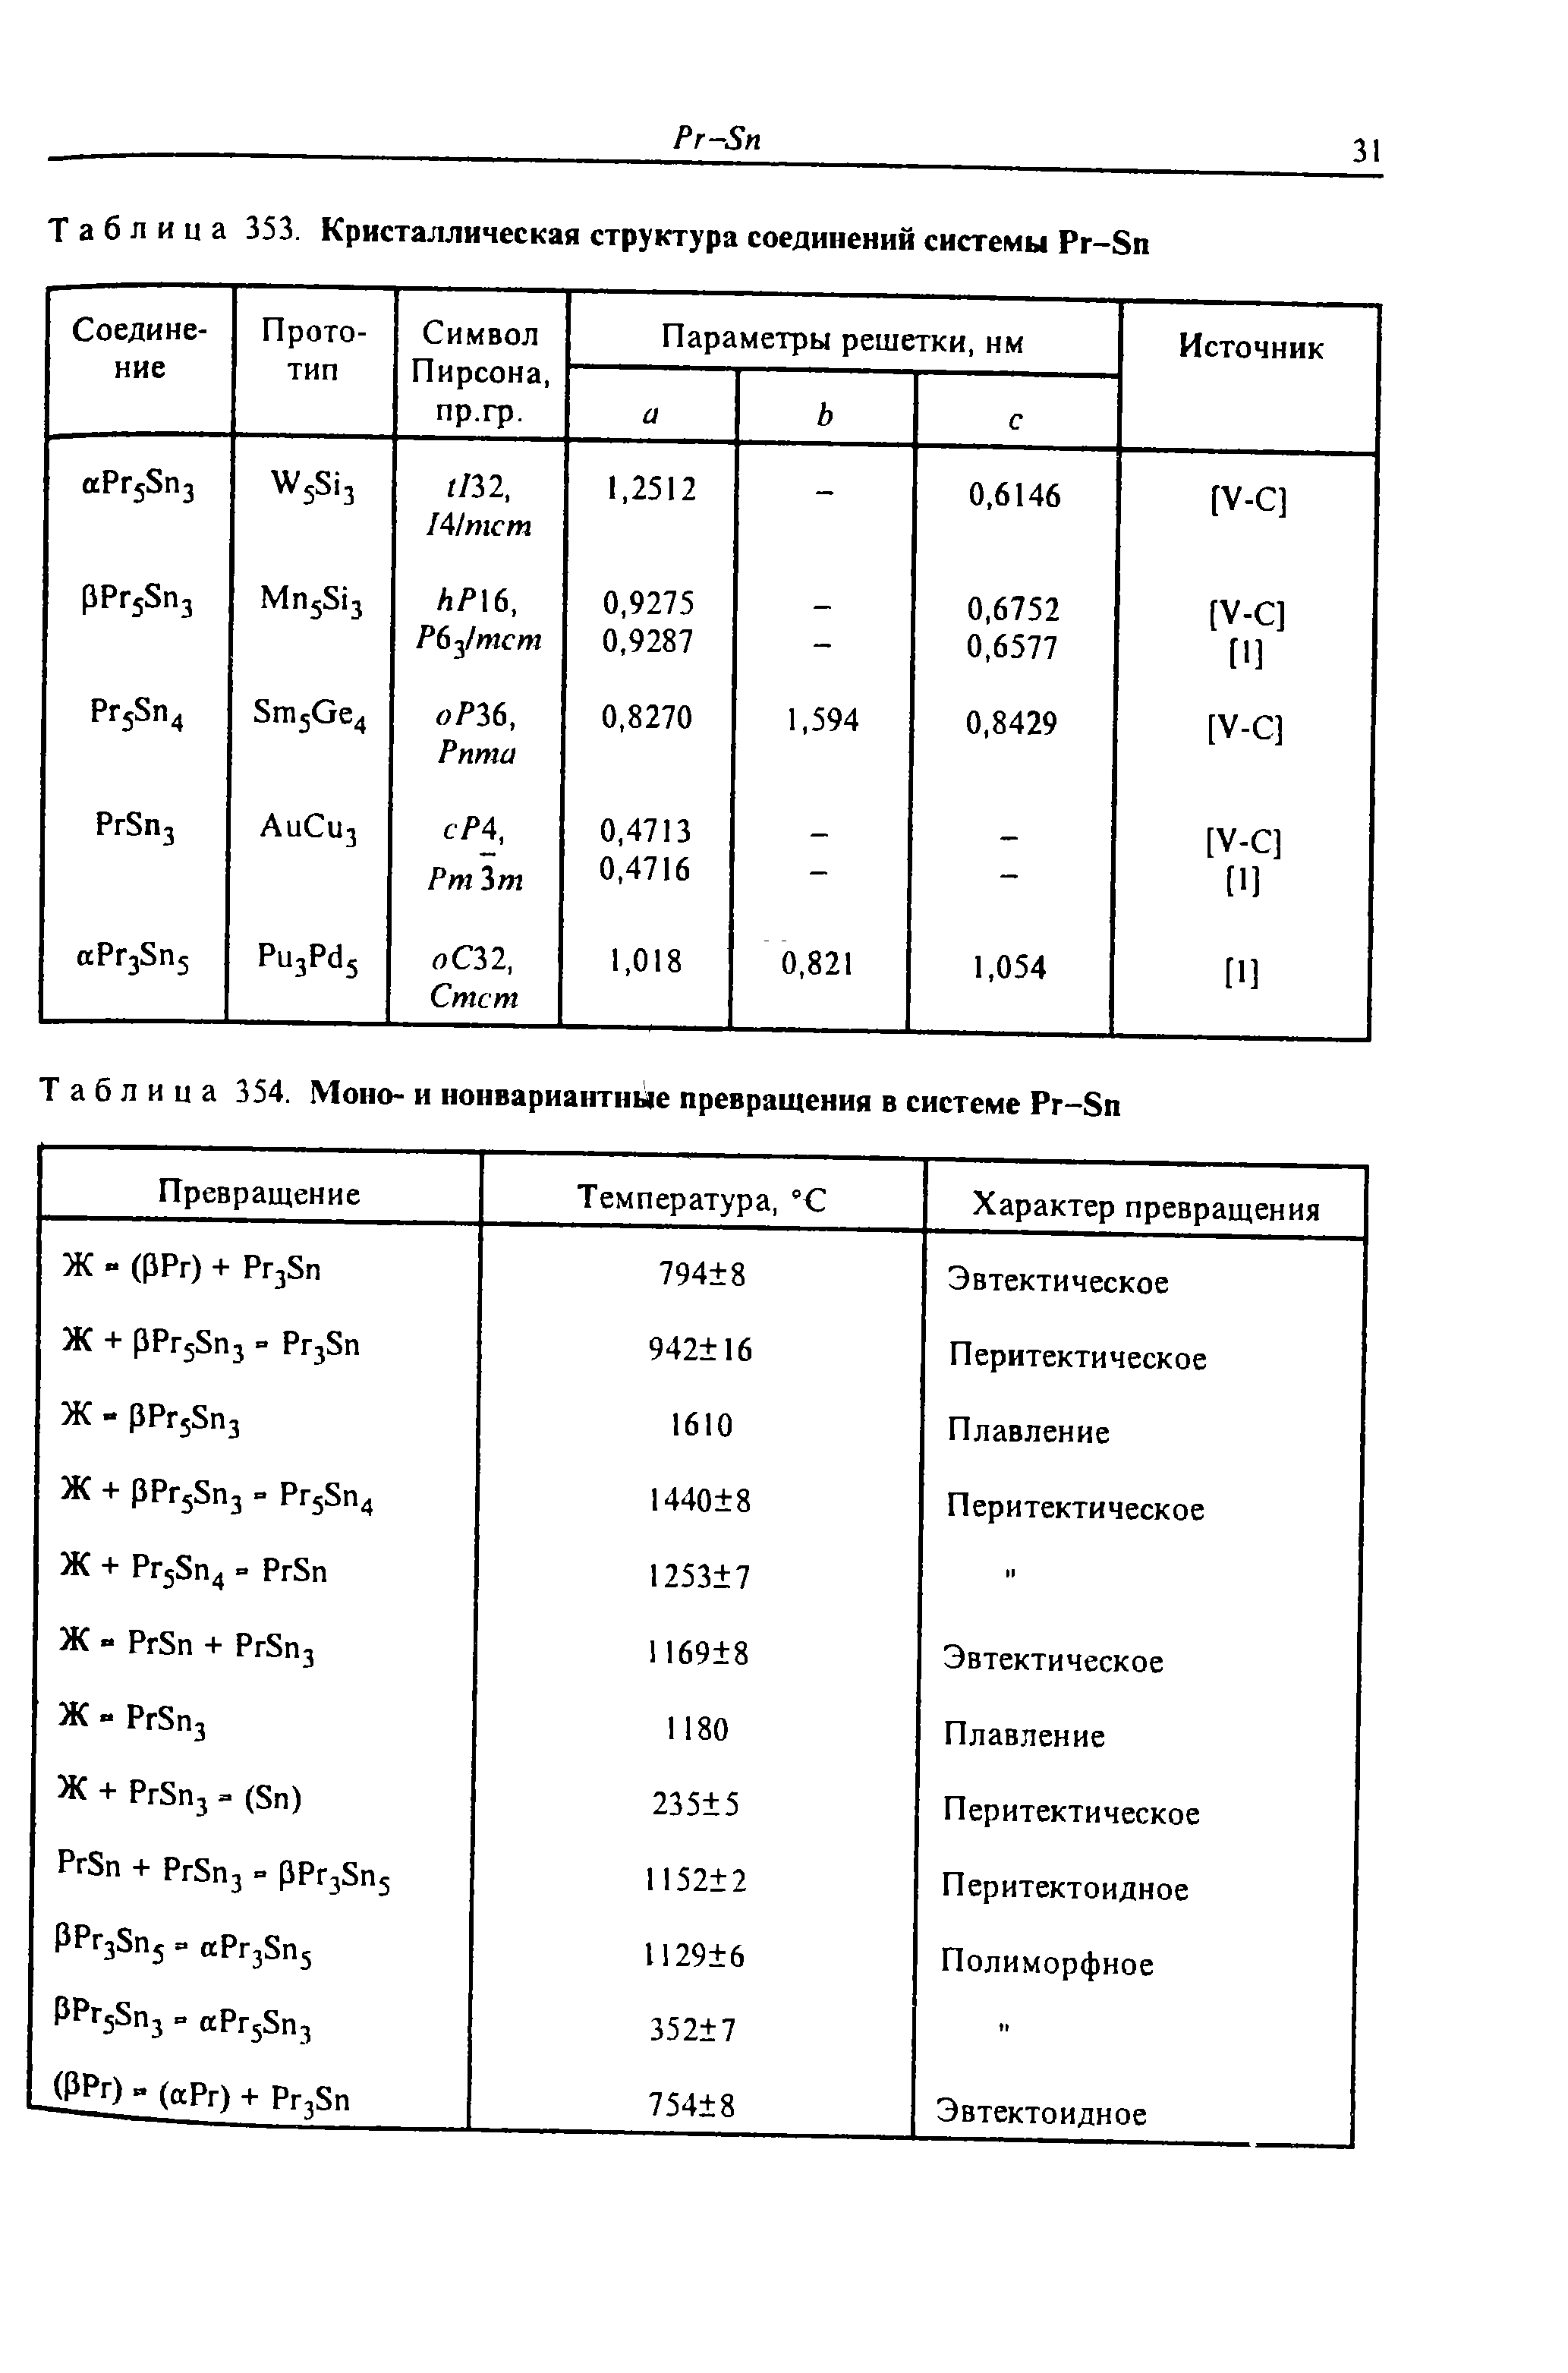 Таблица 354. Моно- и нонвариантные превращения в системе Pr-Sn
